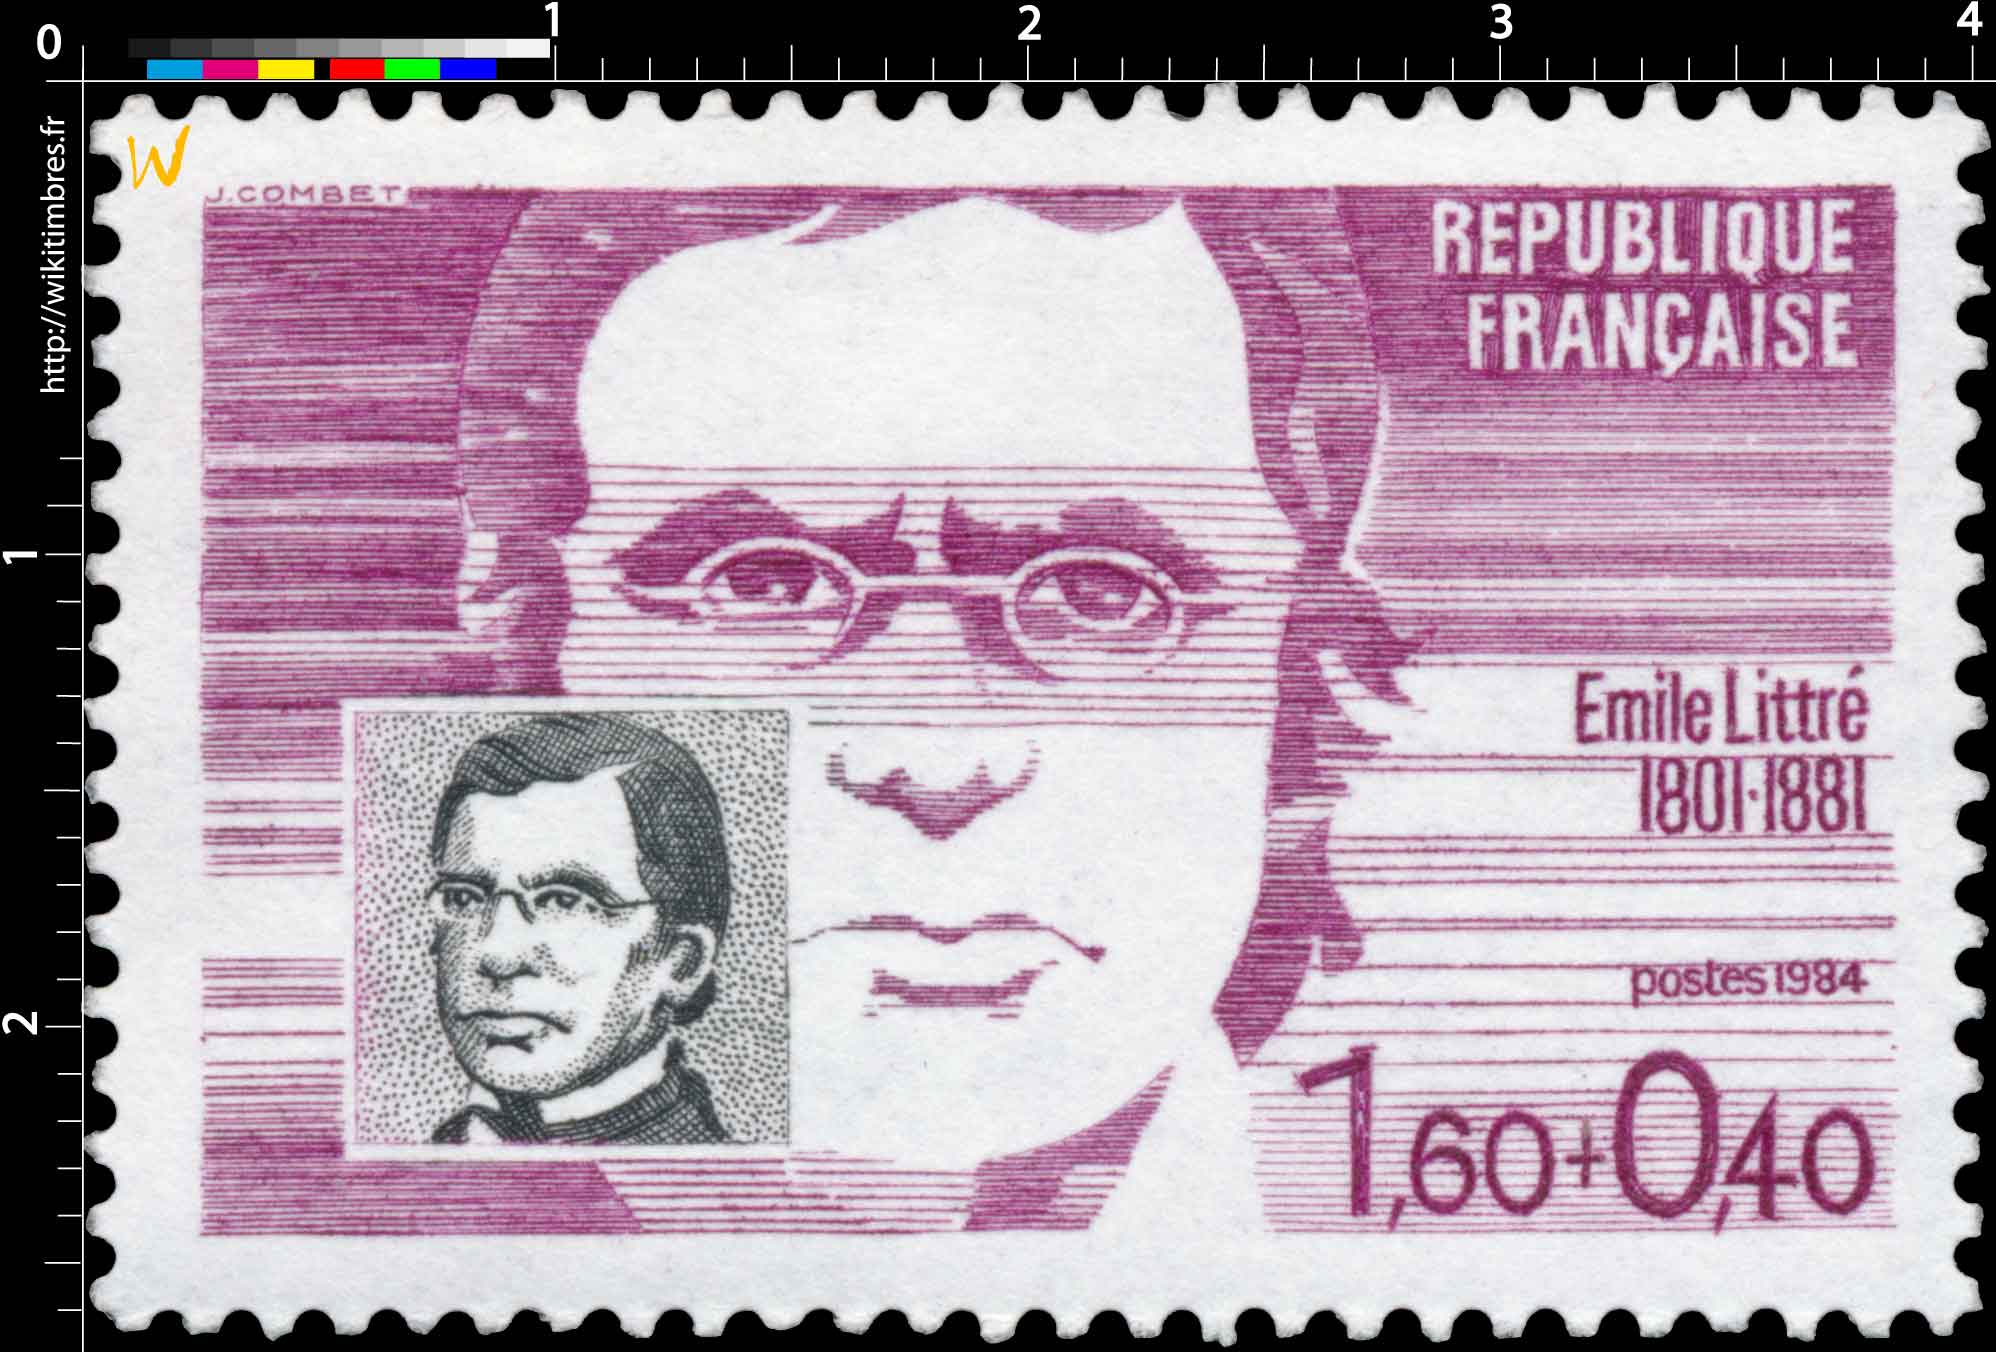 1984 Émile Littré 1801-1881